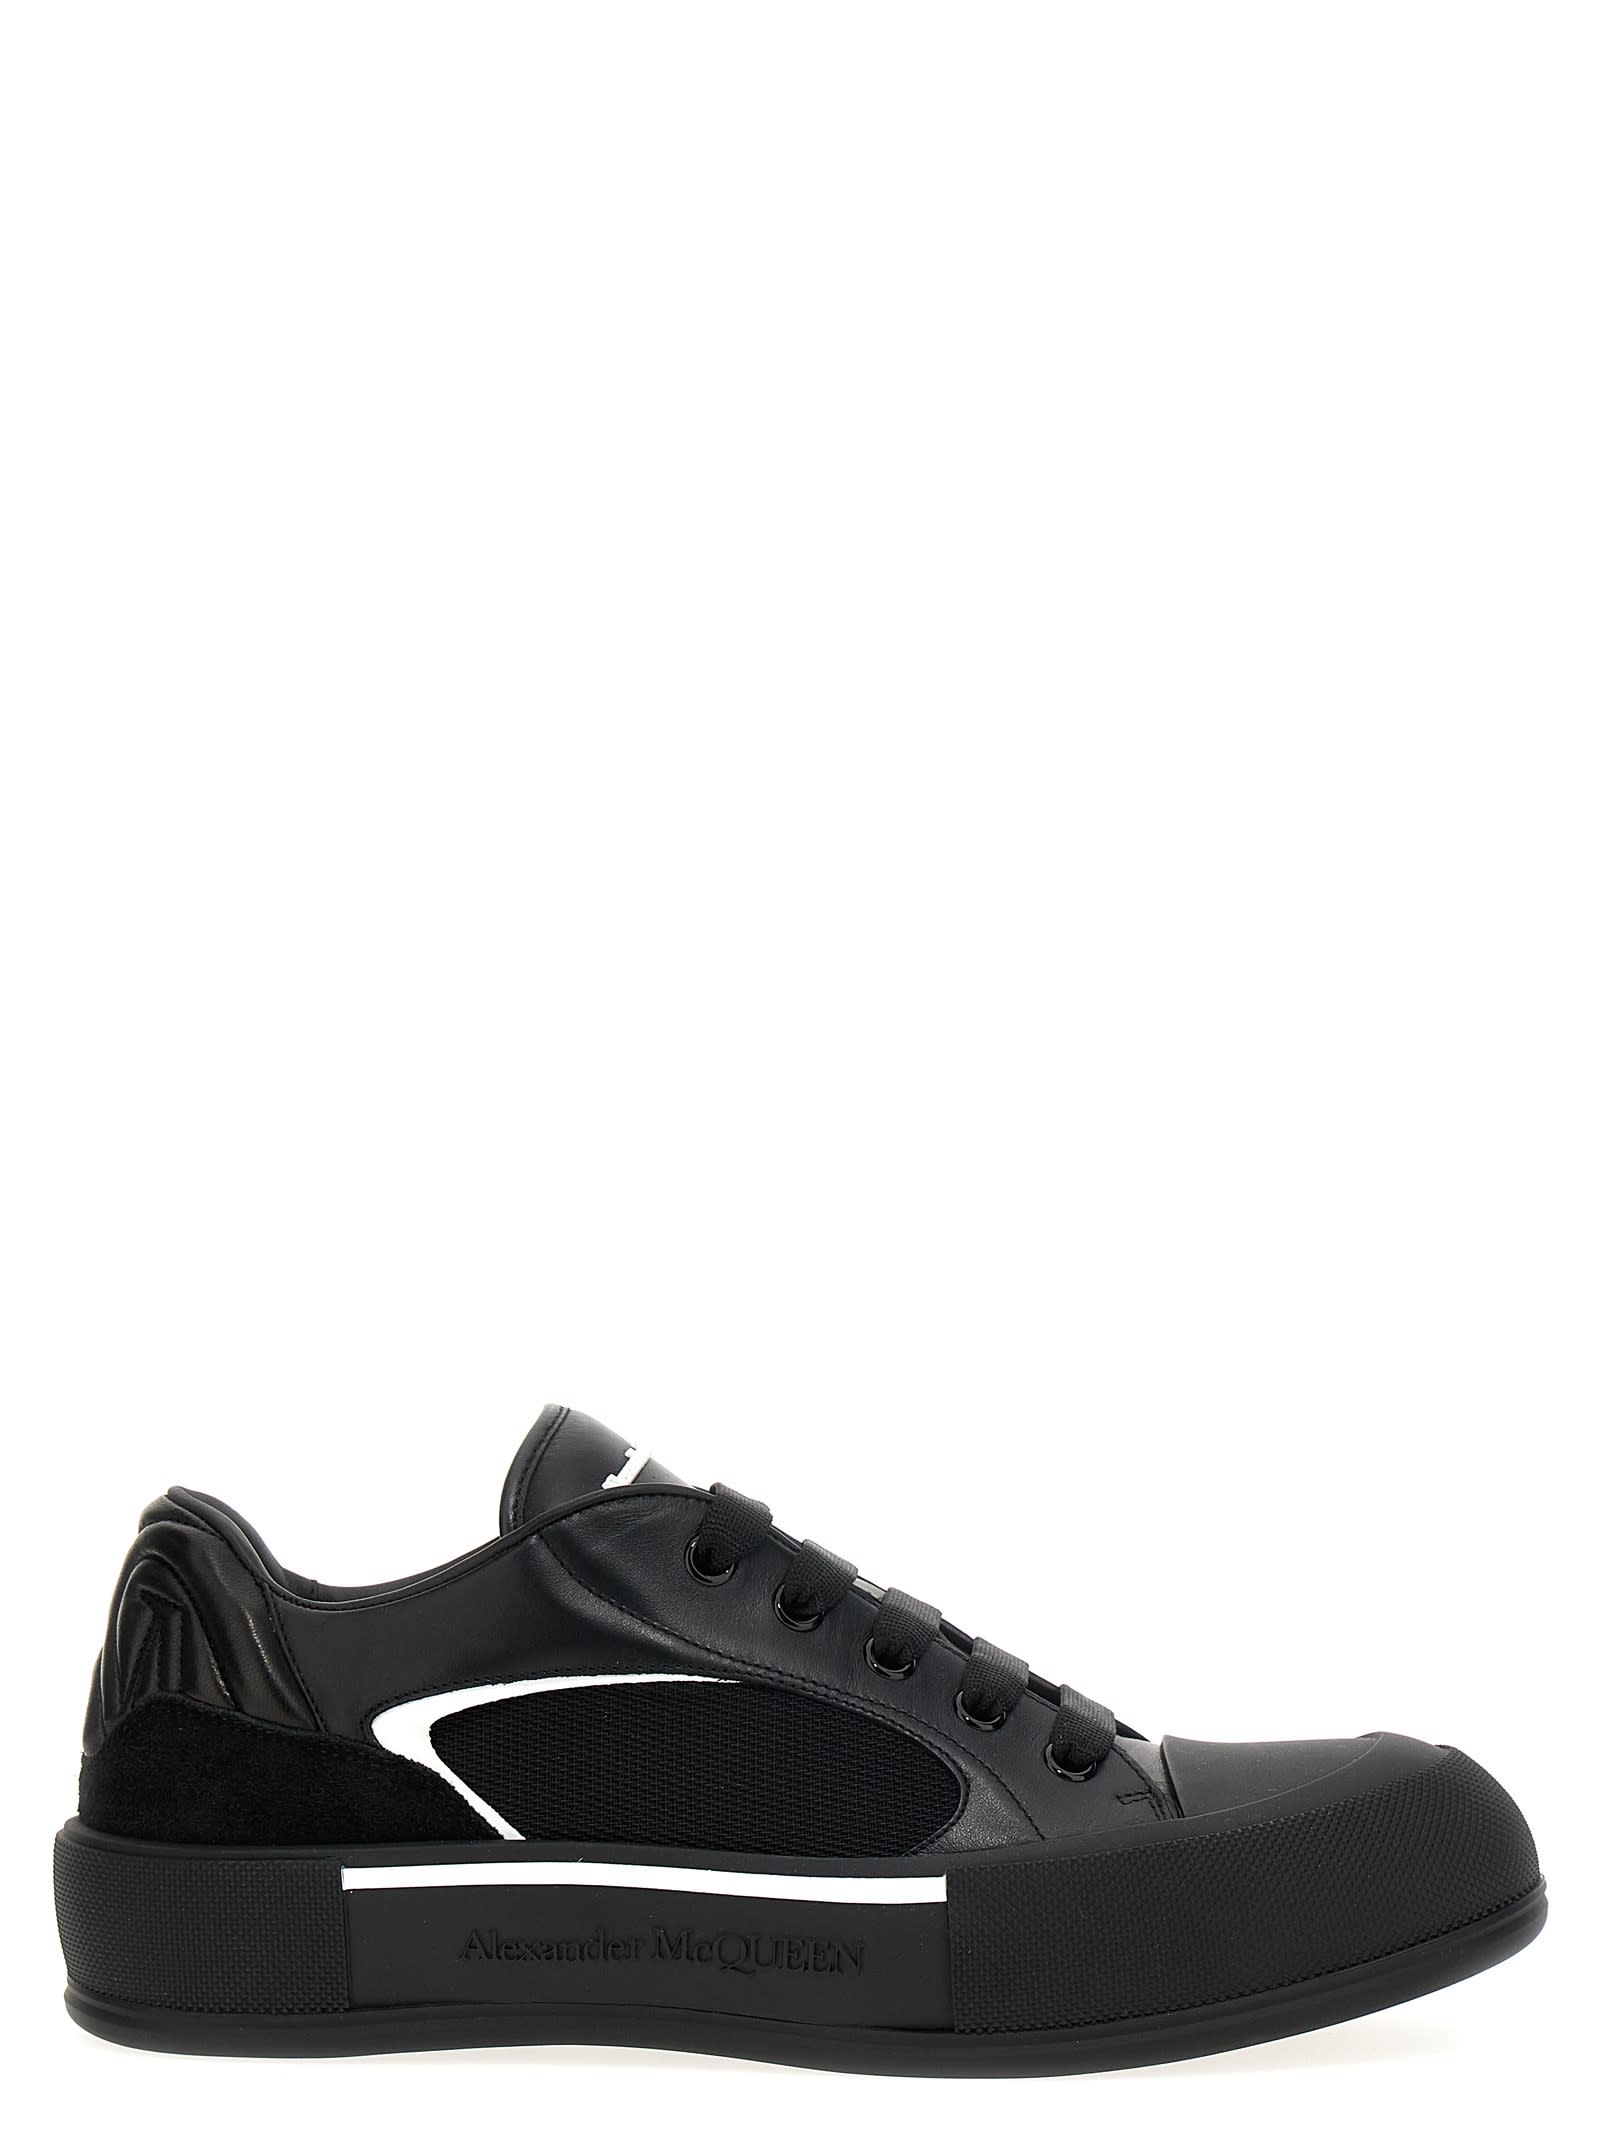 Alexander Mcqueen Neoprene Canvas Sneakers In Black